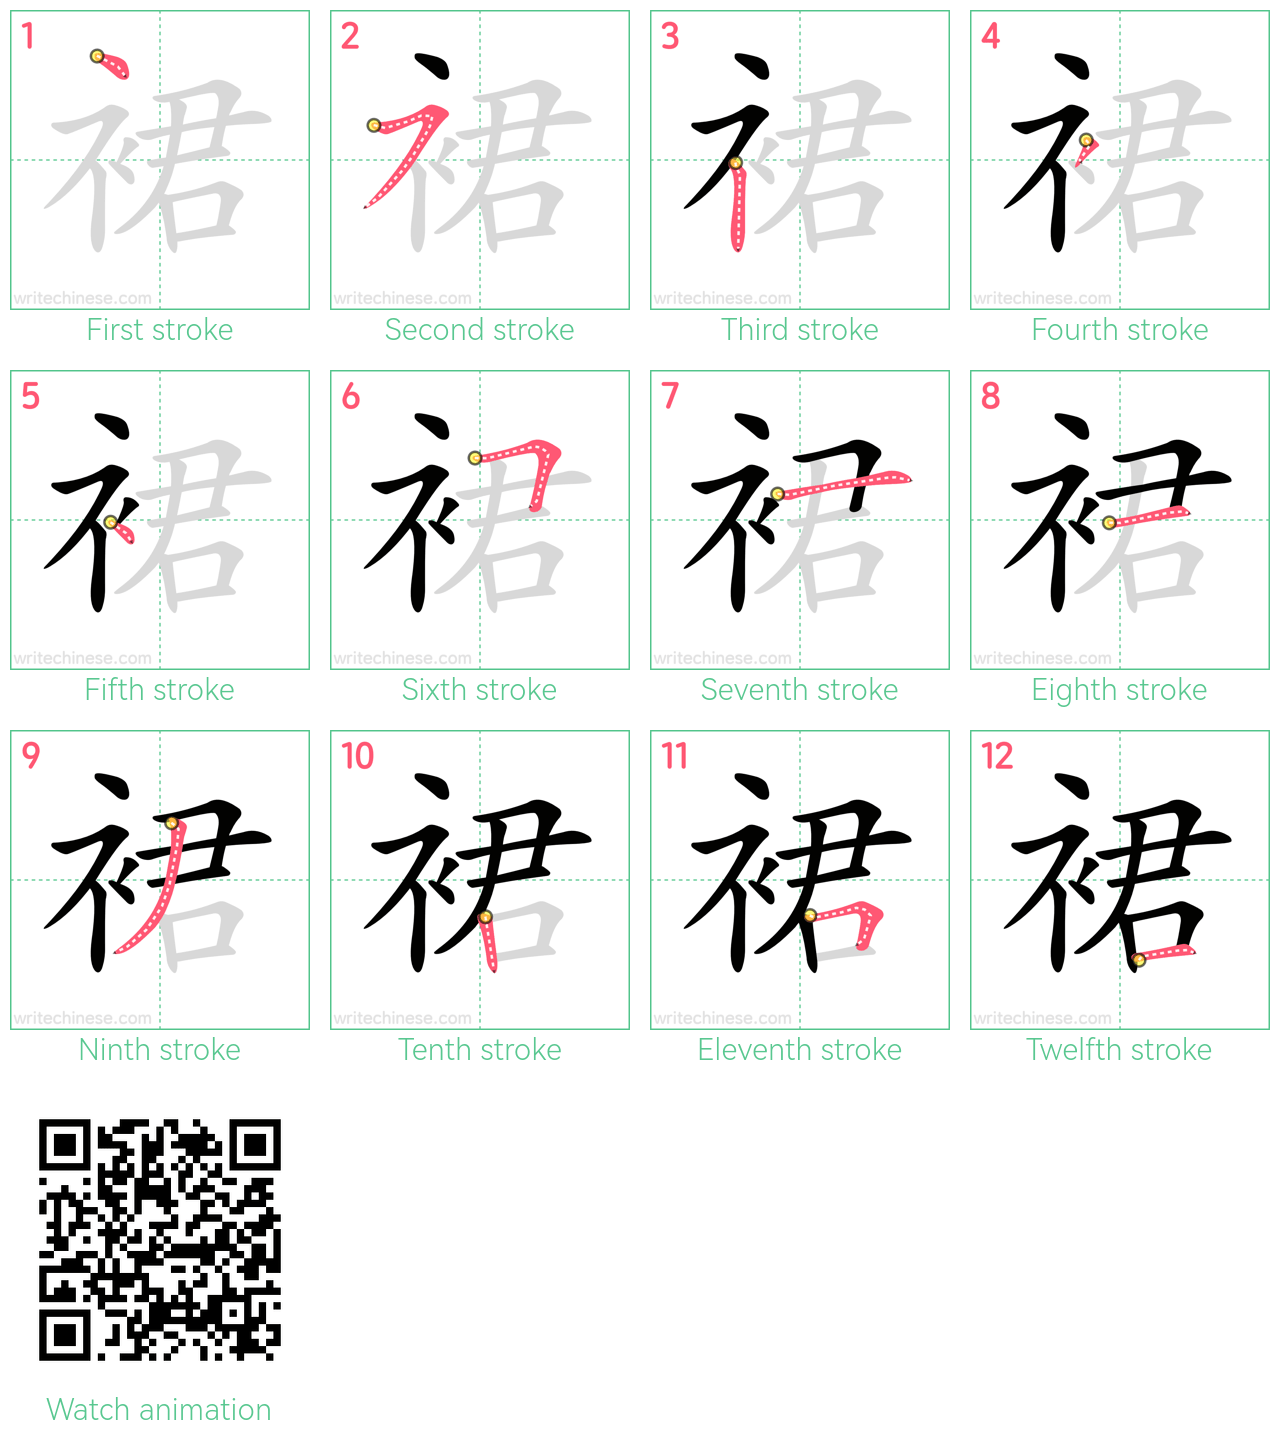 裙 step-by-step stroke order diagrams